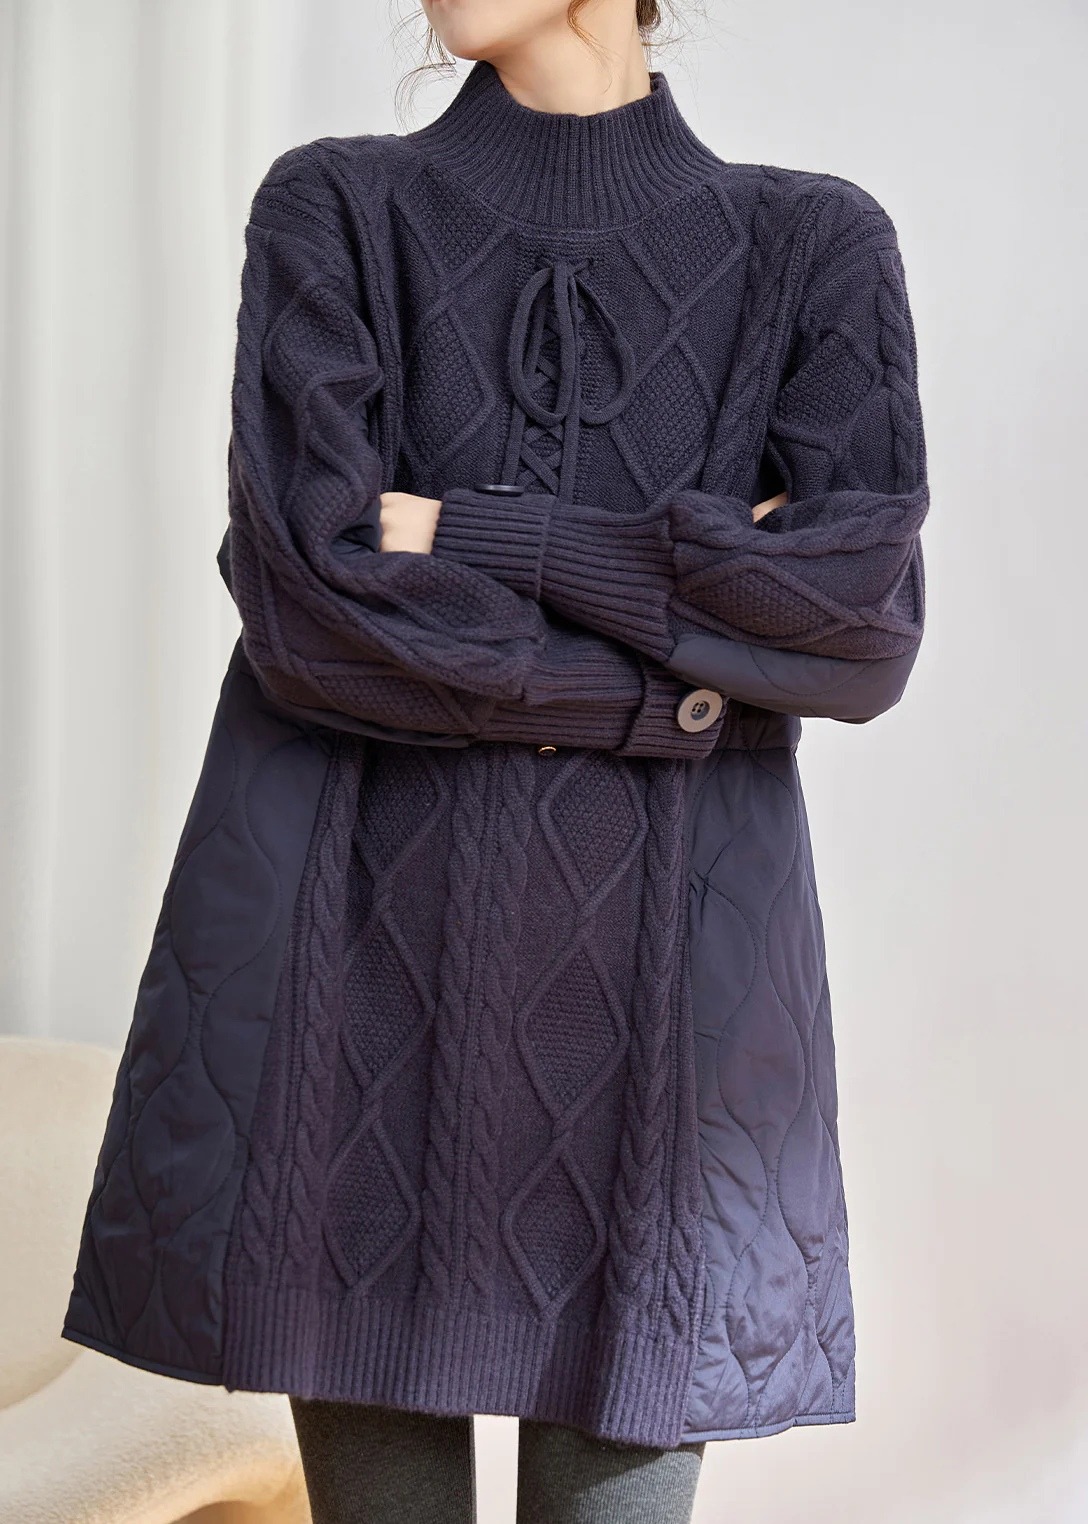 Вязаное платье со вставками из ткани. Схема узора